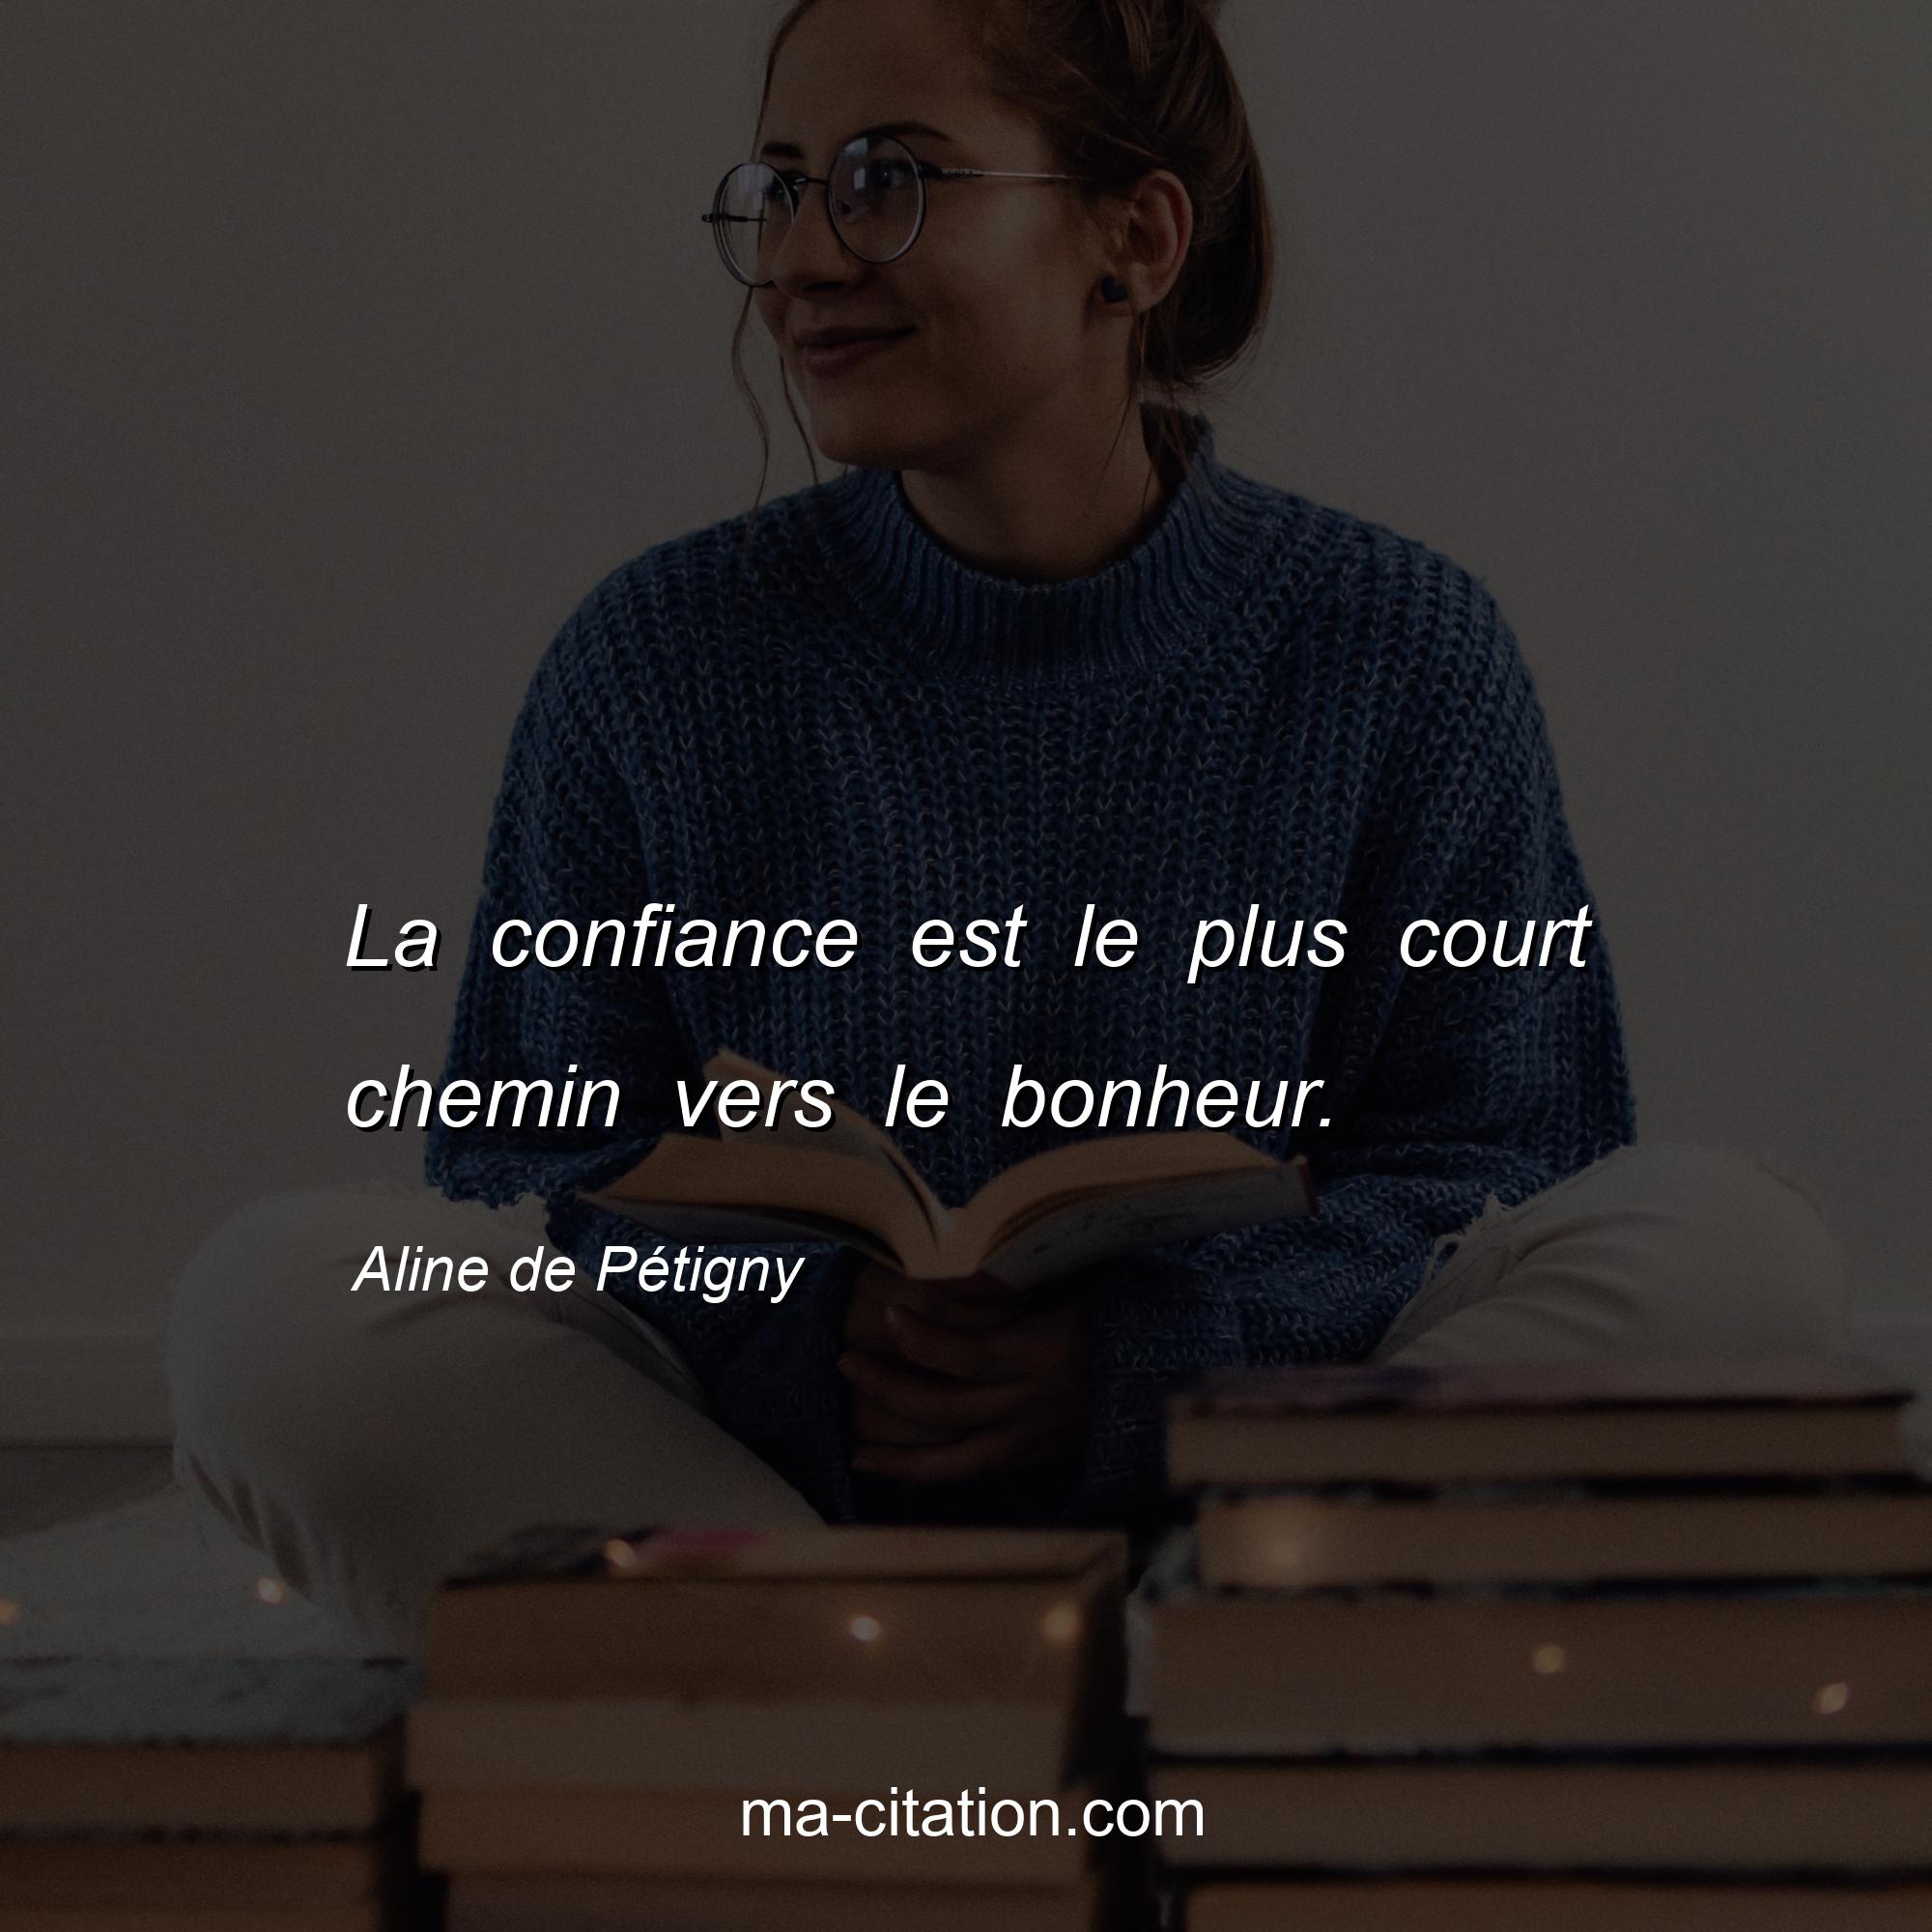 Aline de Pétigny : La confiance est le plus court chemin vers le bonheur.